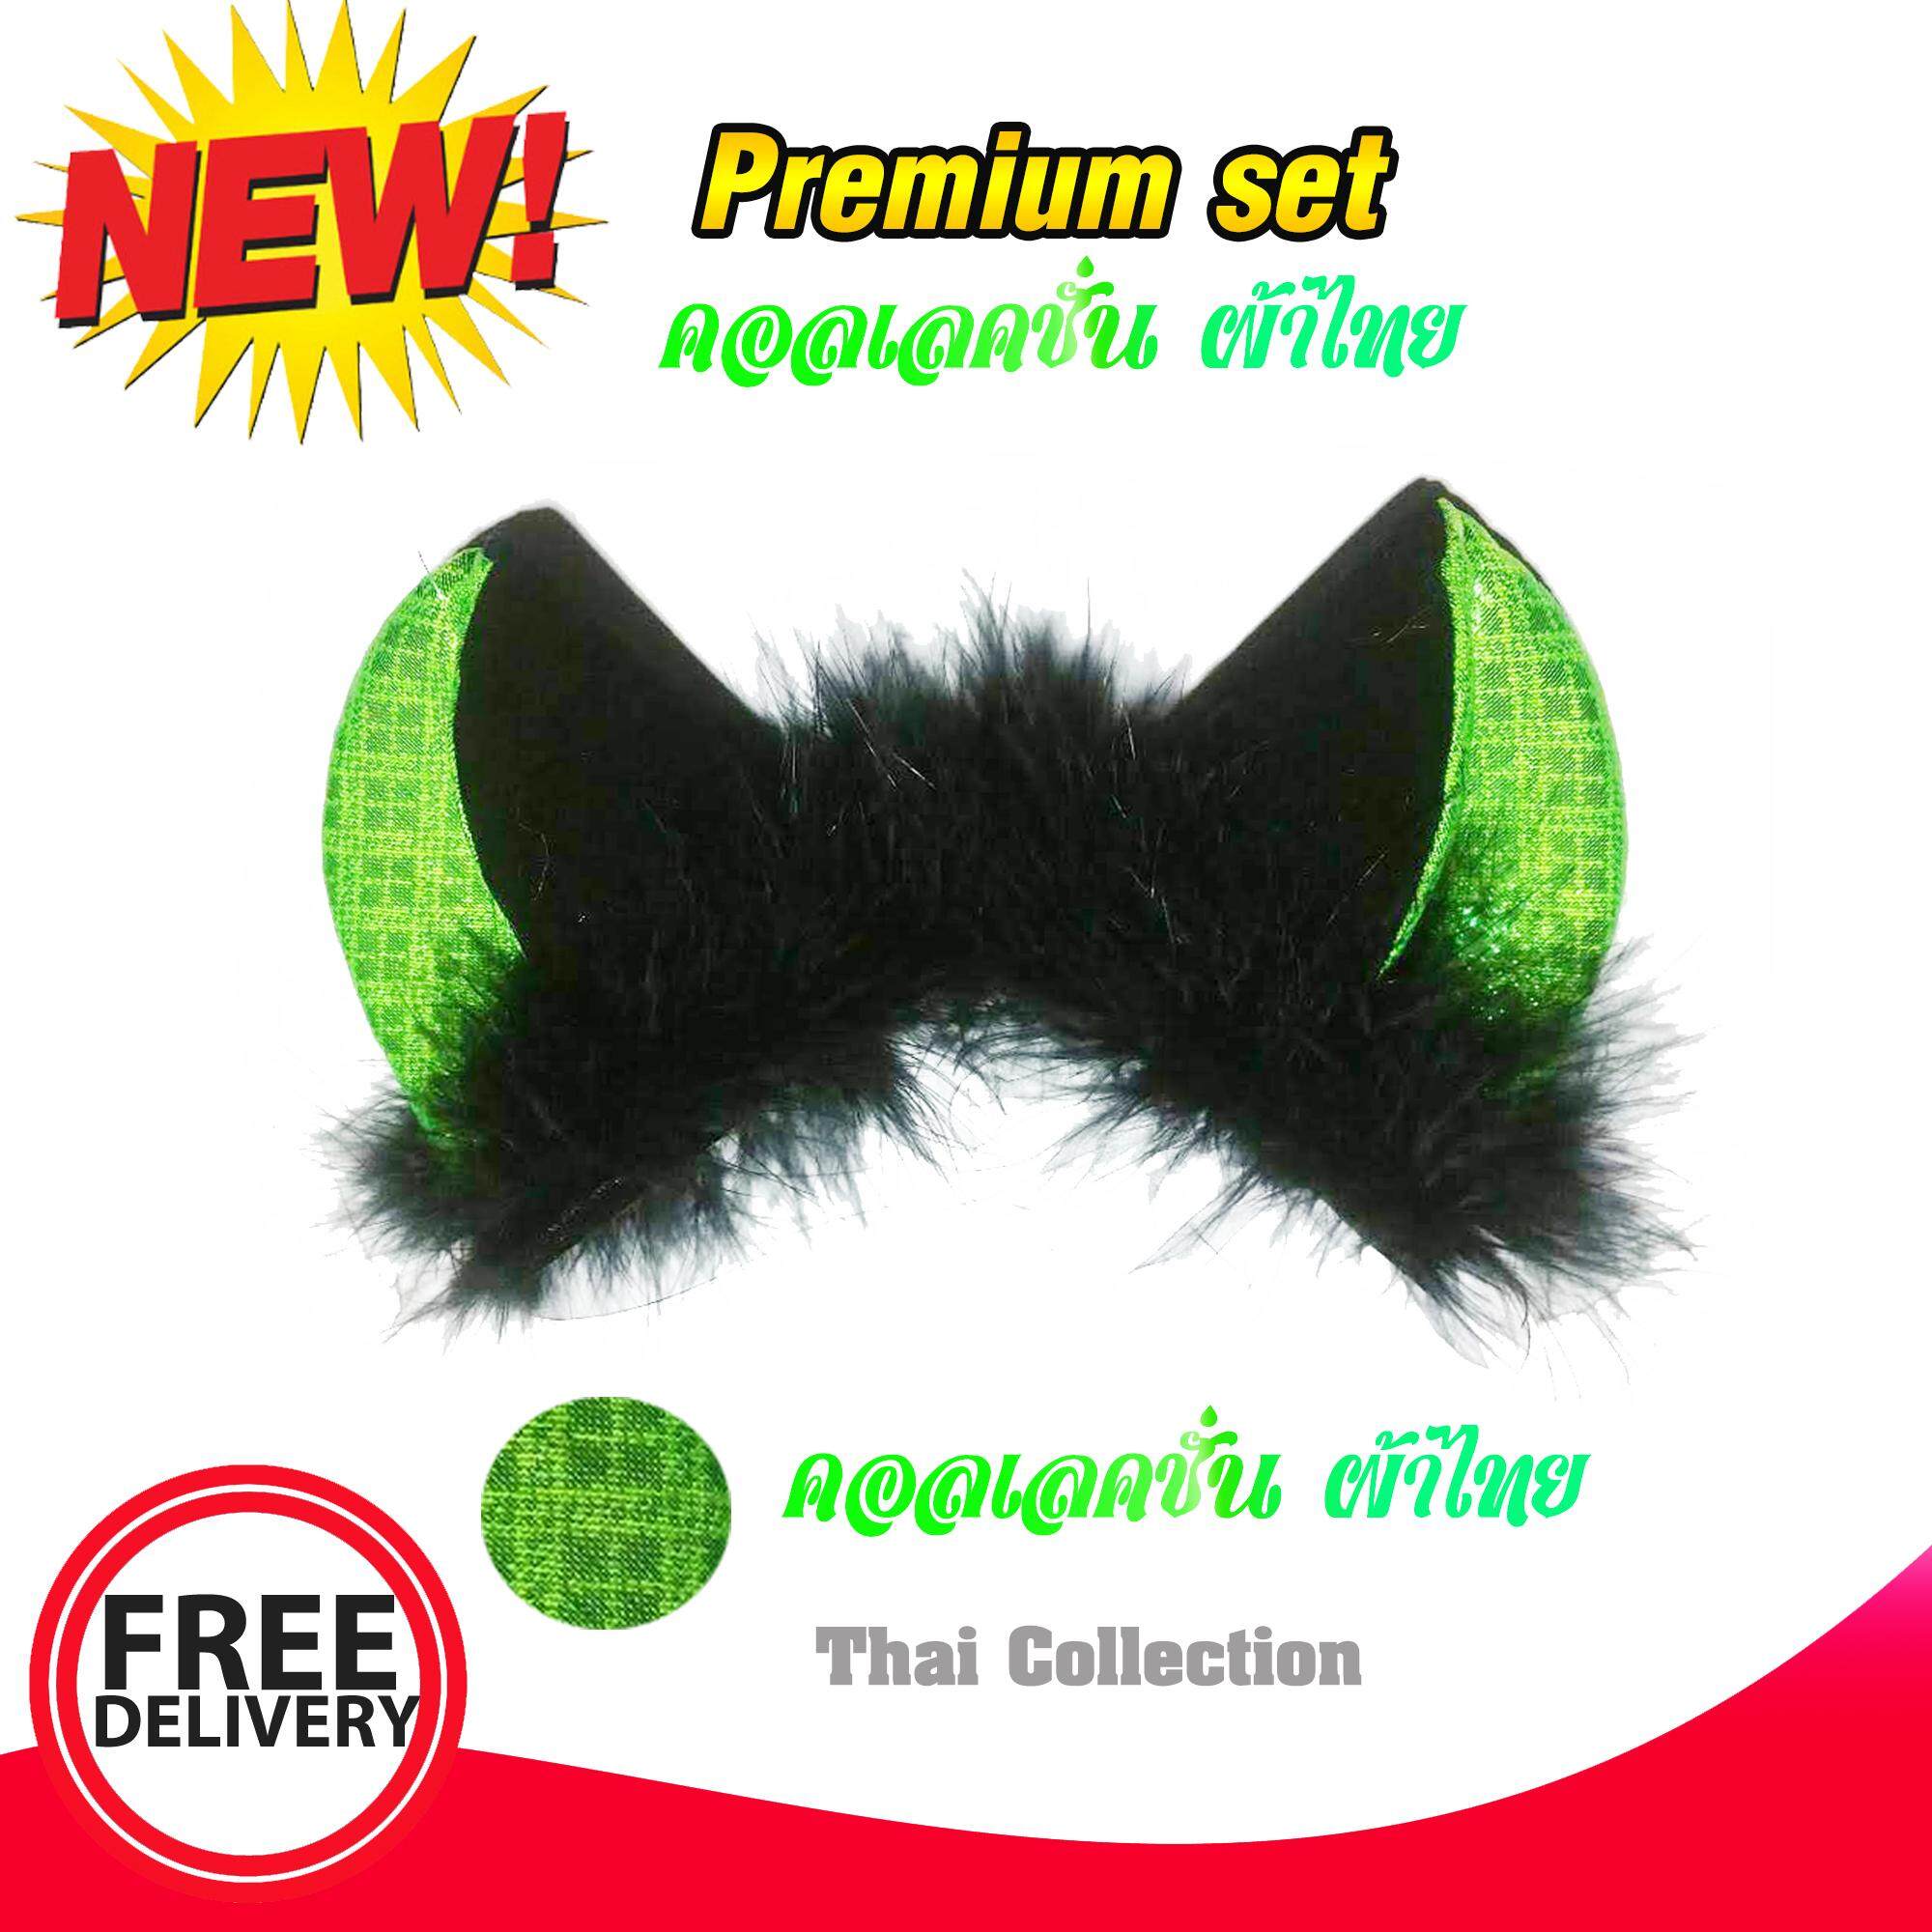 หูฟรุ้งฟริ้ง หูแมว สี ดำ-เขียว 1 คู่  ชุดพิเศษ ผ้าไทย